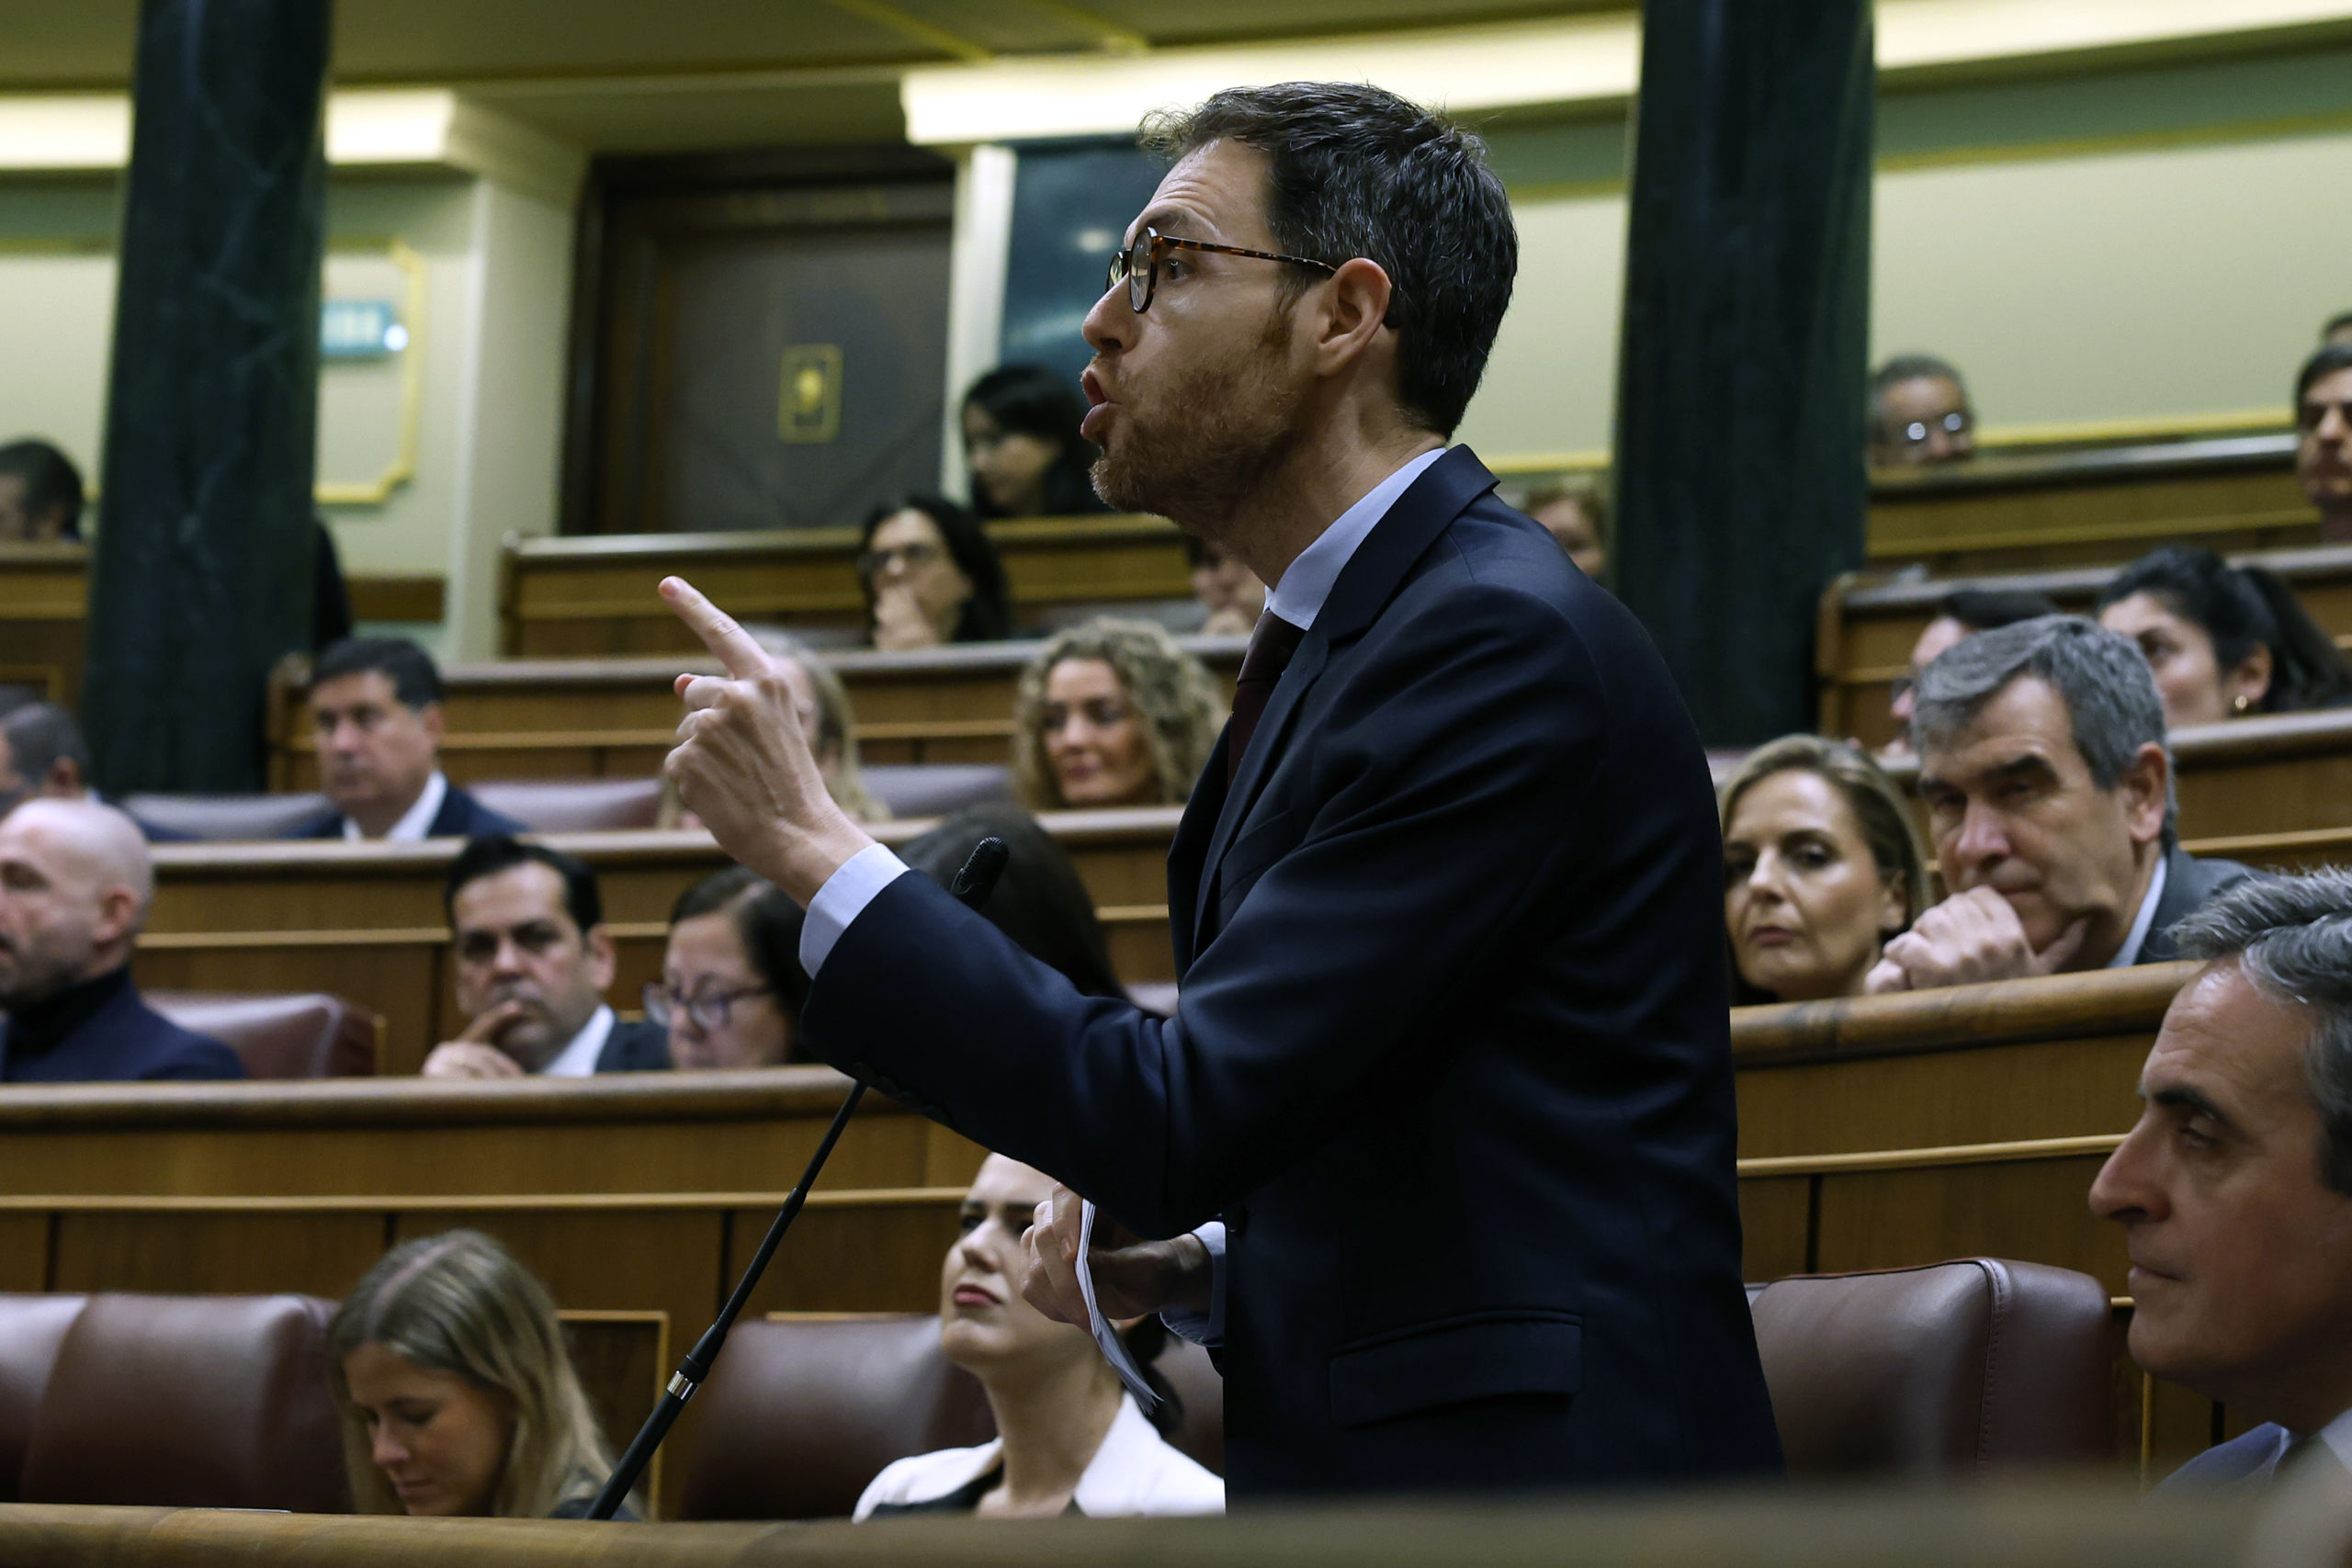 Sayas vapulea a Bolaños y advierte a los independentistas: "Con España no pueden, con Sánchez sí"